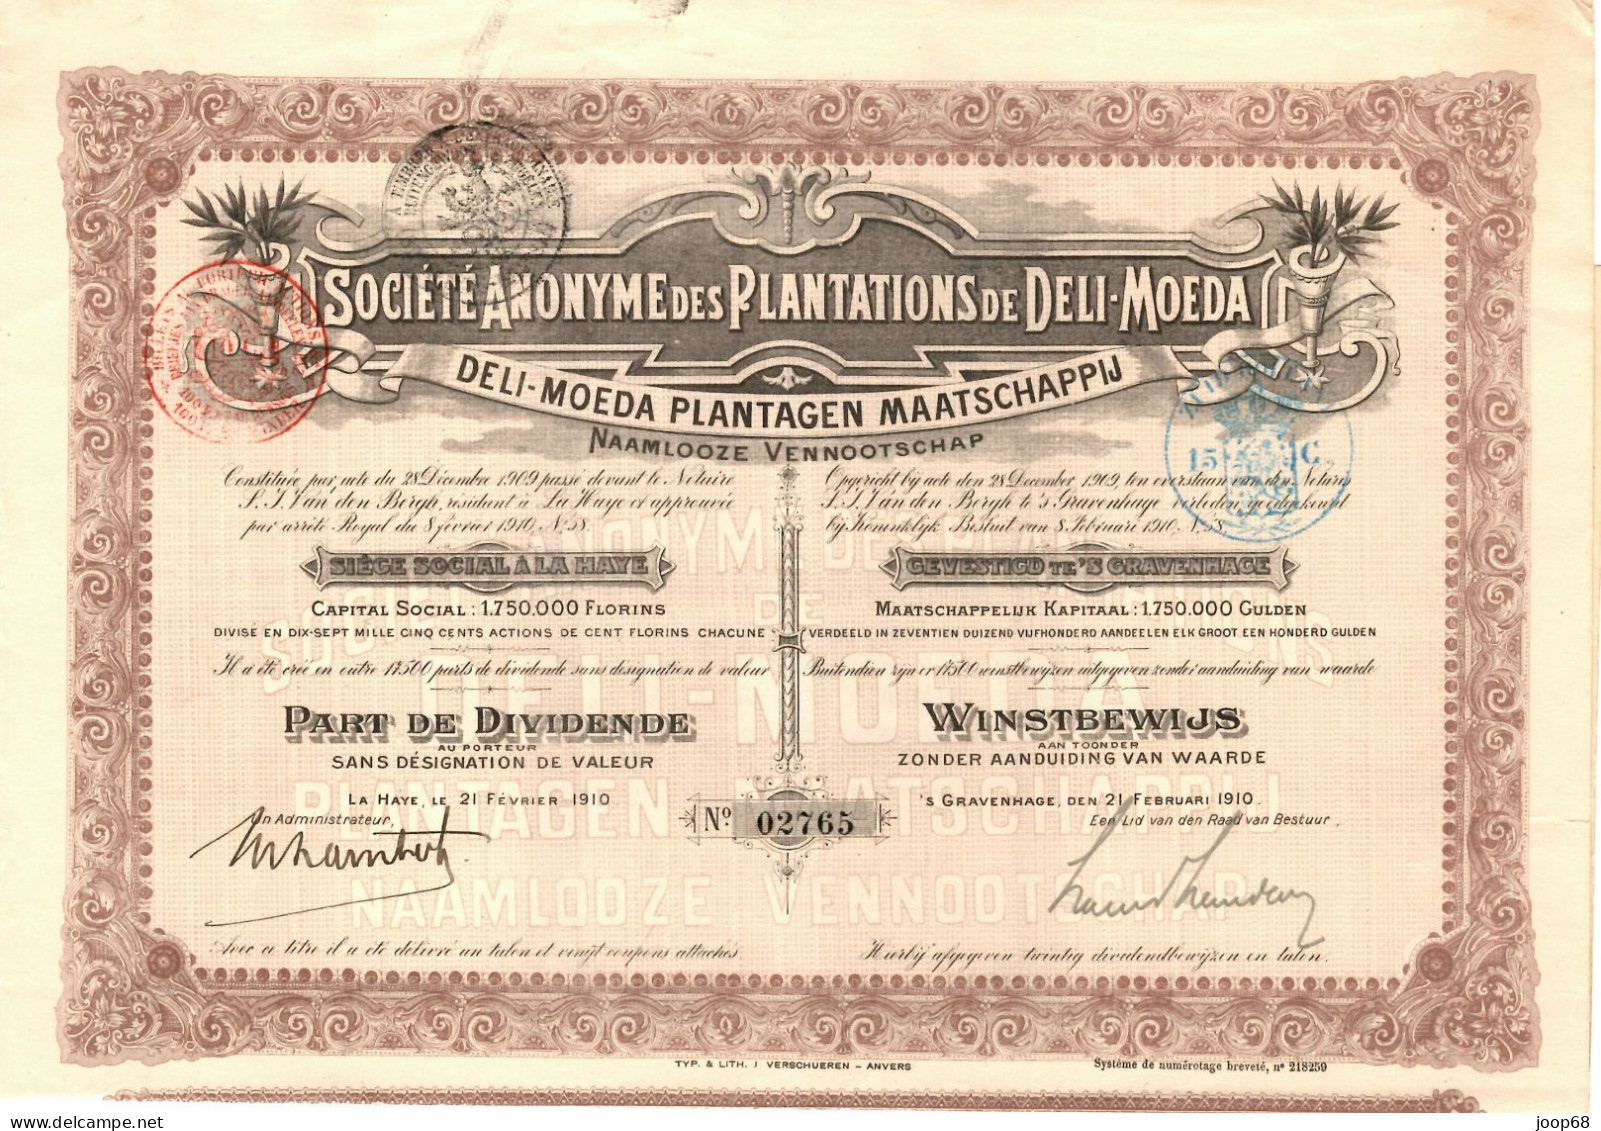 Deli-Moeda Plantagen Maatschaapij N.V. - Winstbewijs - 's Gravenhage, 21 Februari 1910 Indonesia - Landbouw